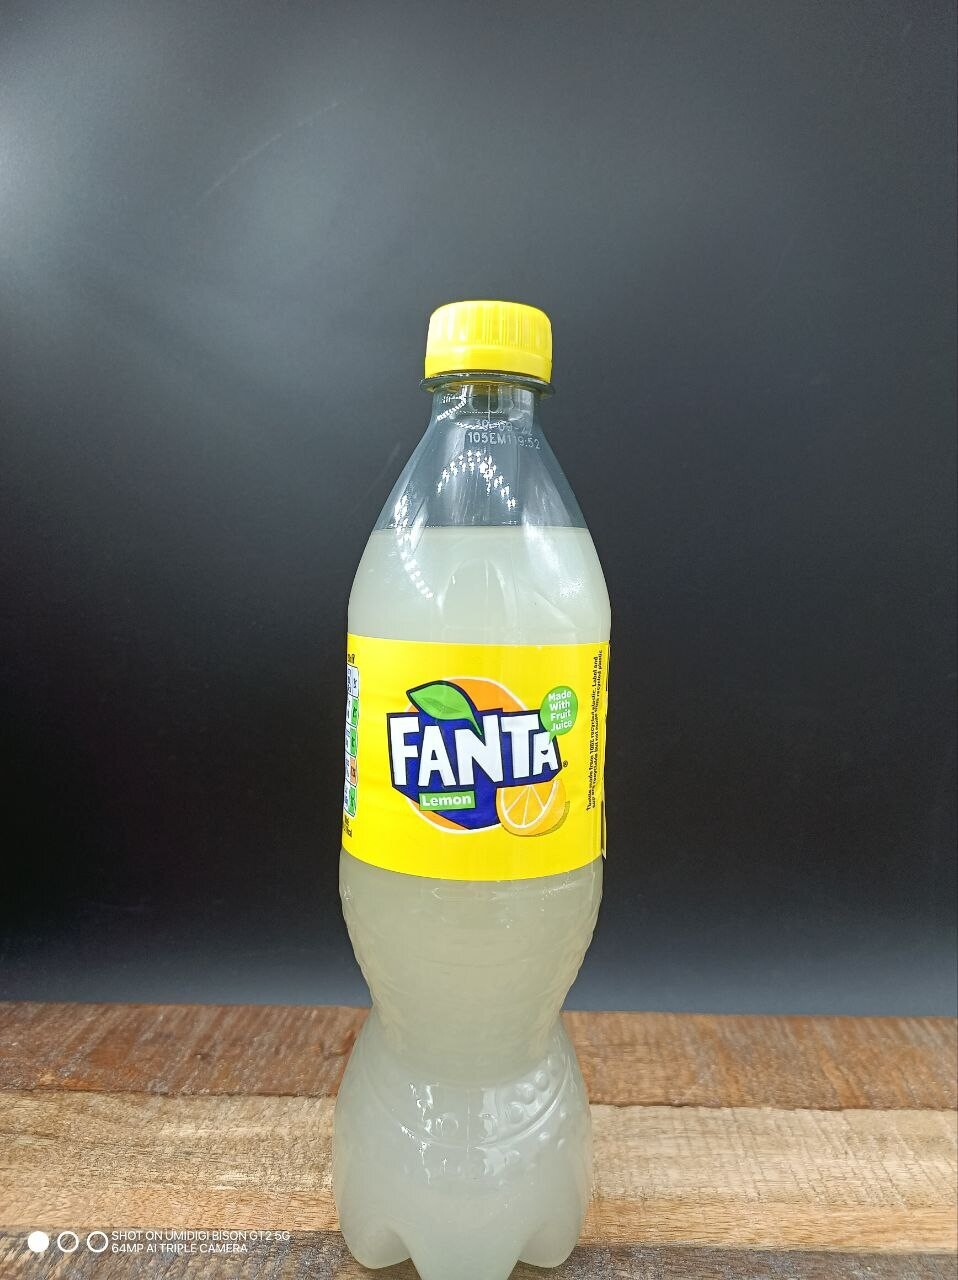 Fanta Lemon Bottle 500ml